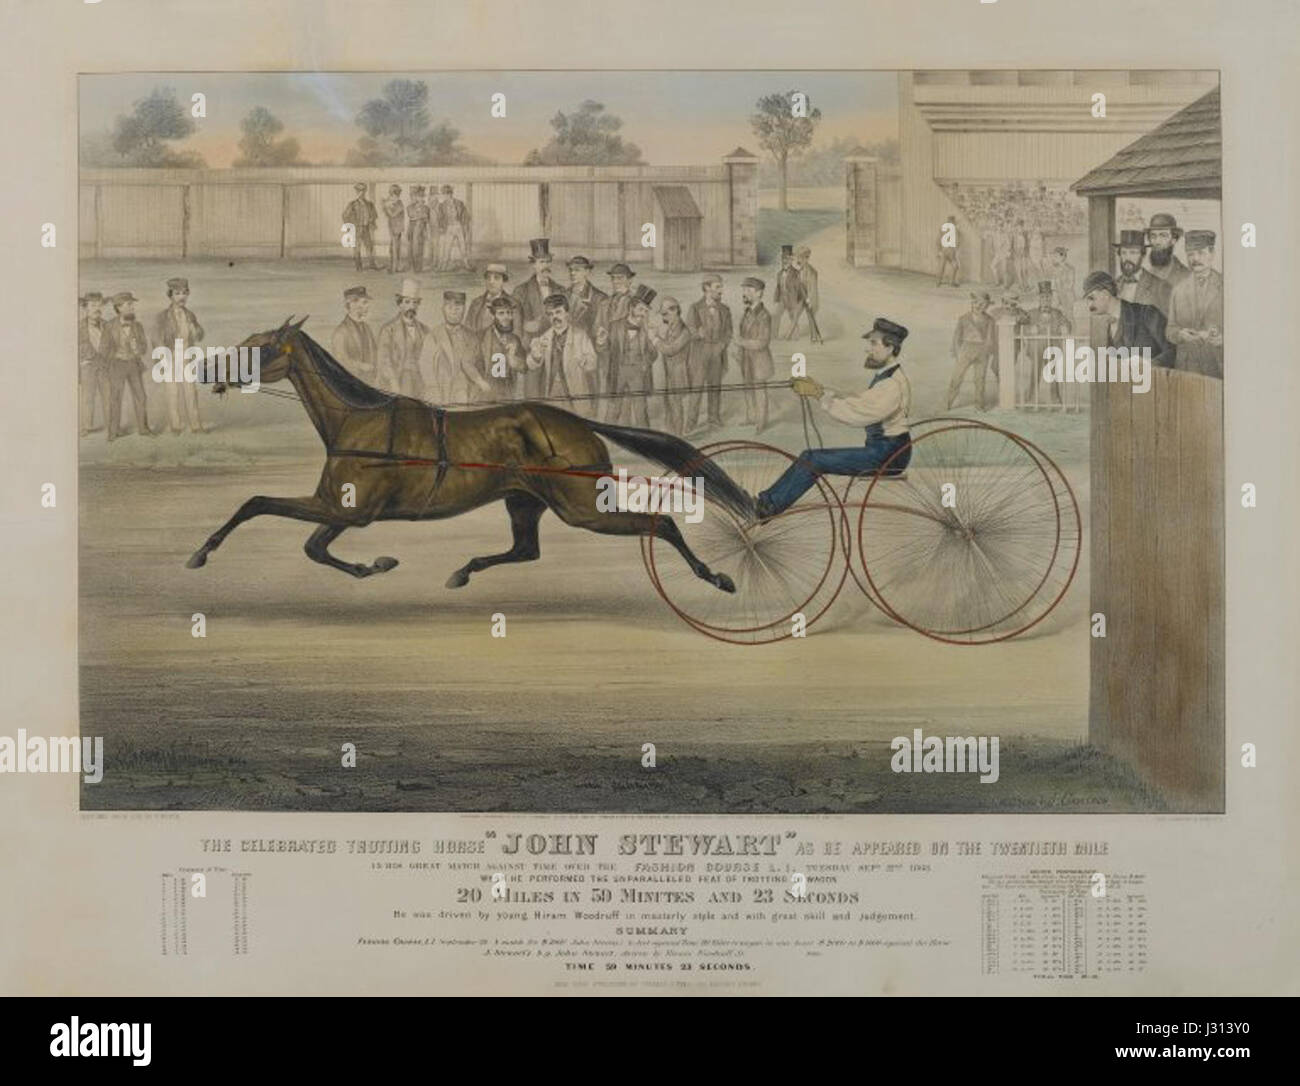 Le Musée de Brooklyn - le célèbre cheval au trot John Stewart ... sur la mode cours après Thomas Worth - Currier Ives Banque D'Images